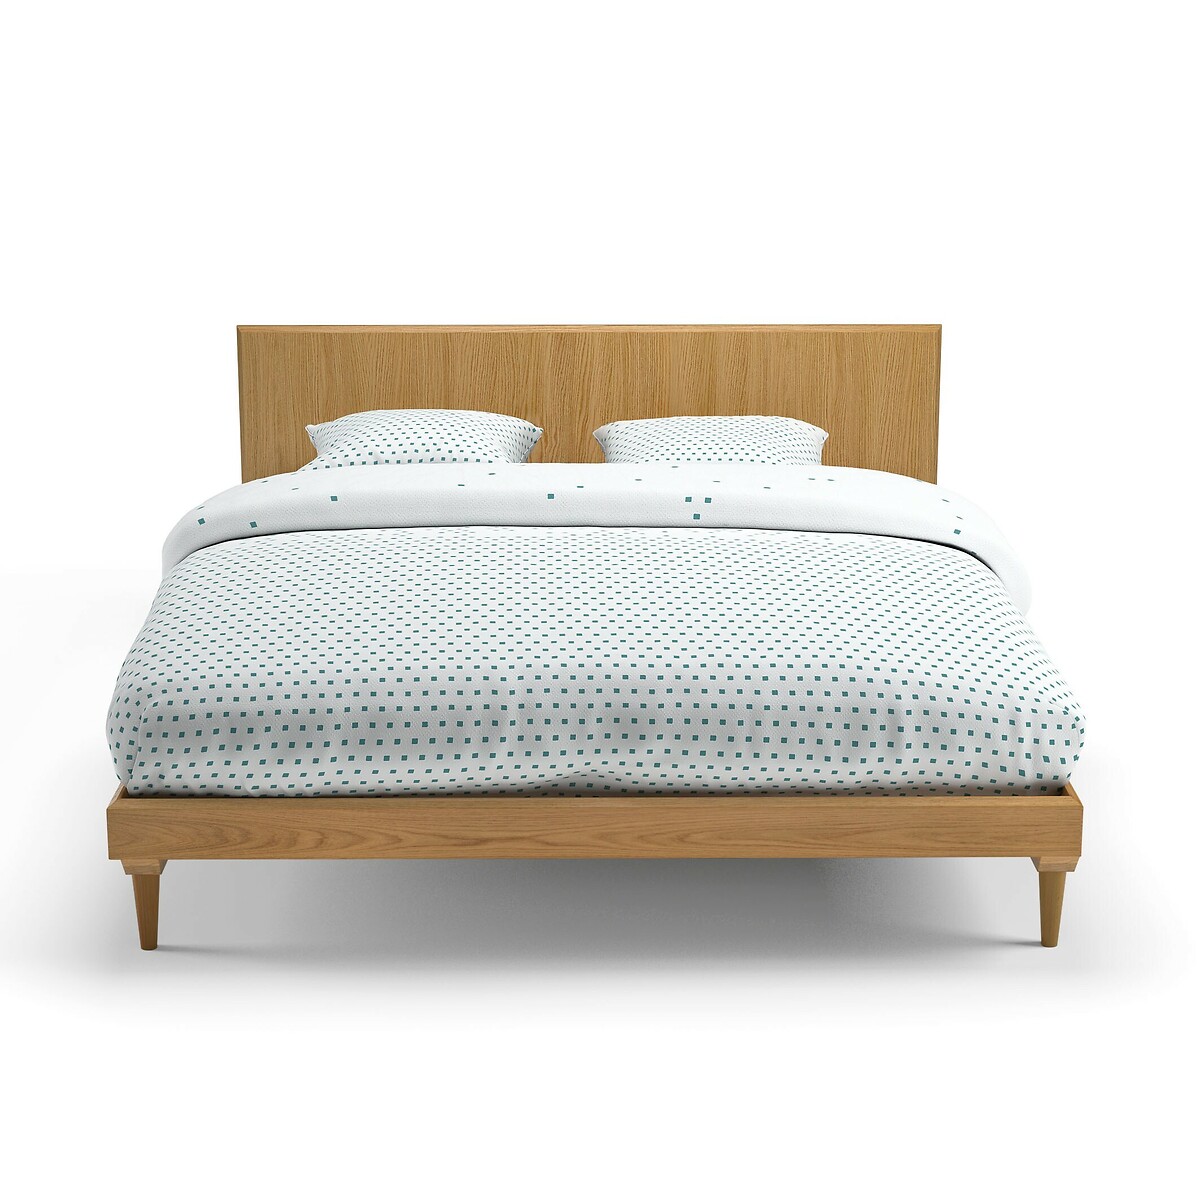 Кровать LaRedoute Кровать В винтажном стиле Quilda 140 x 190 см каштановый